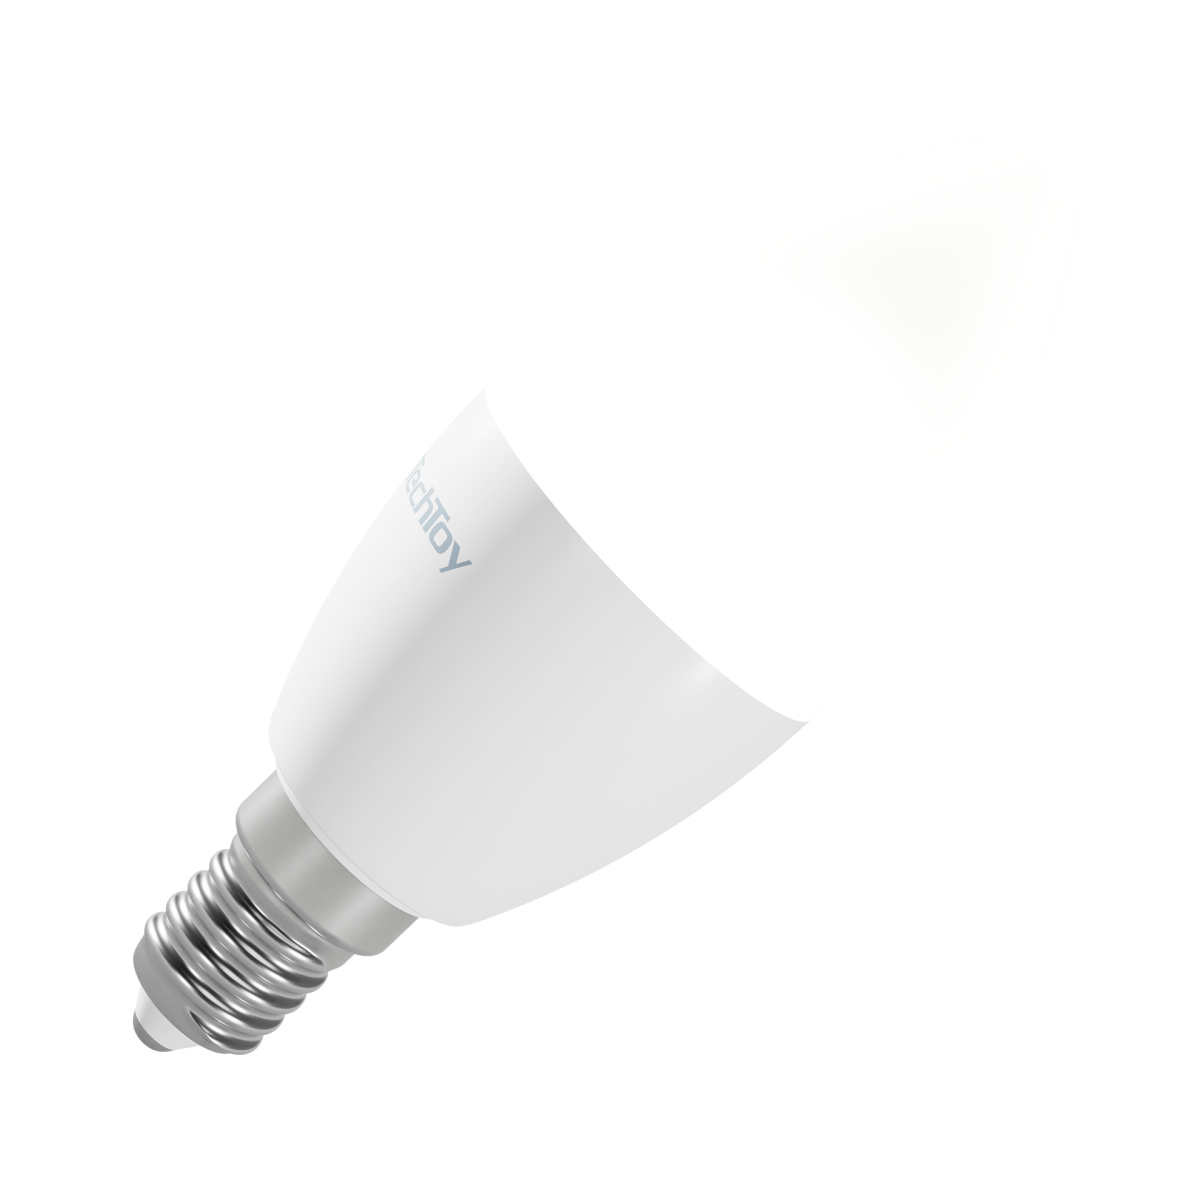 Žárovka TechToy Smart Bulb RGB 6W E14 ZigBee